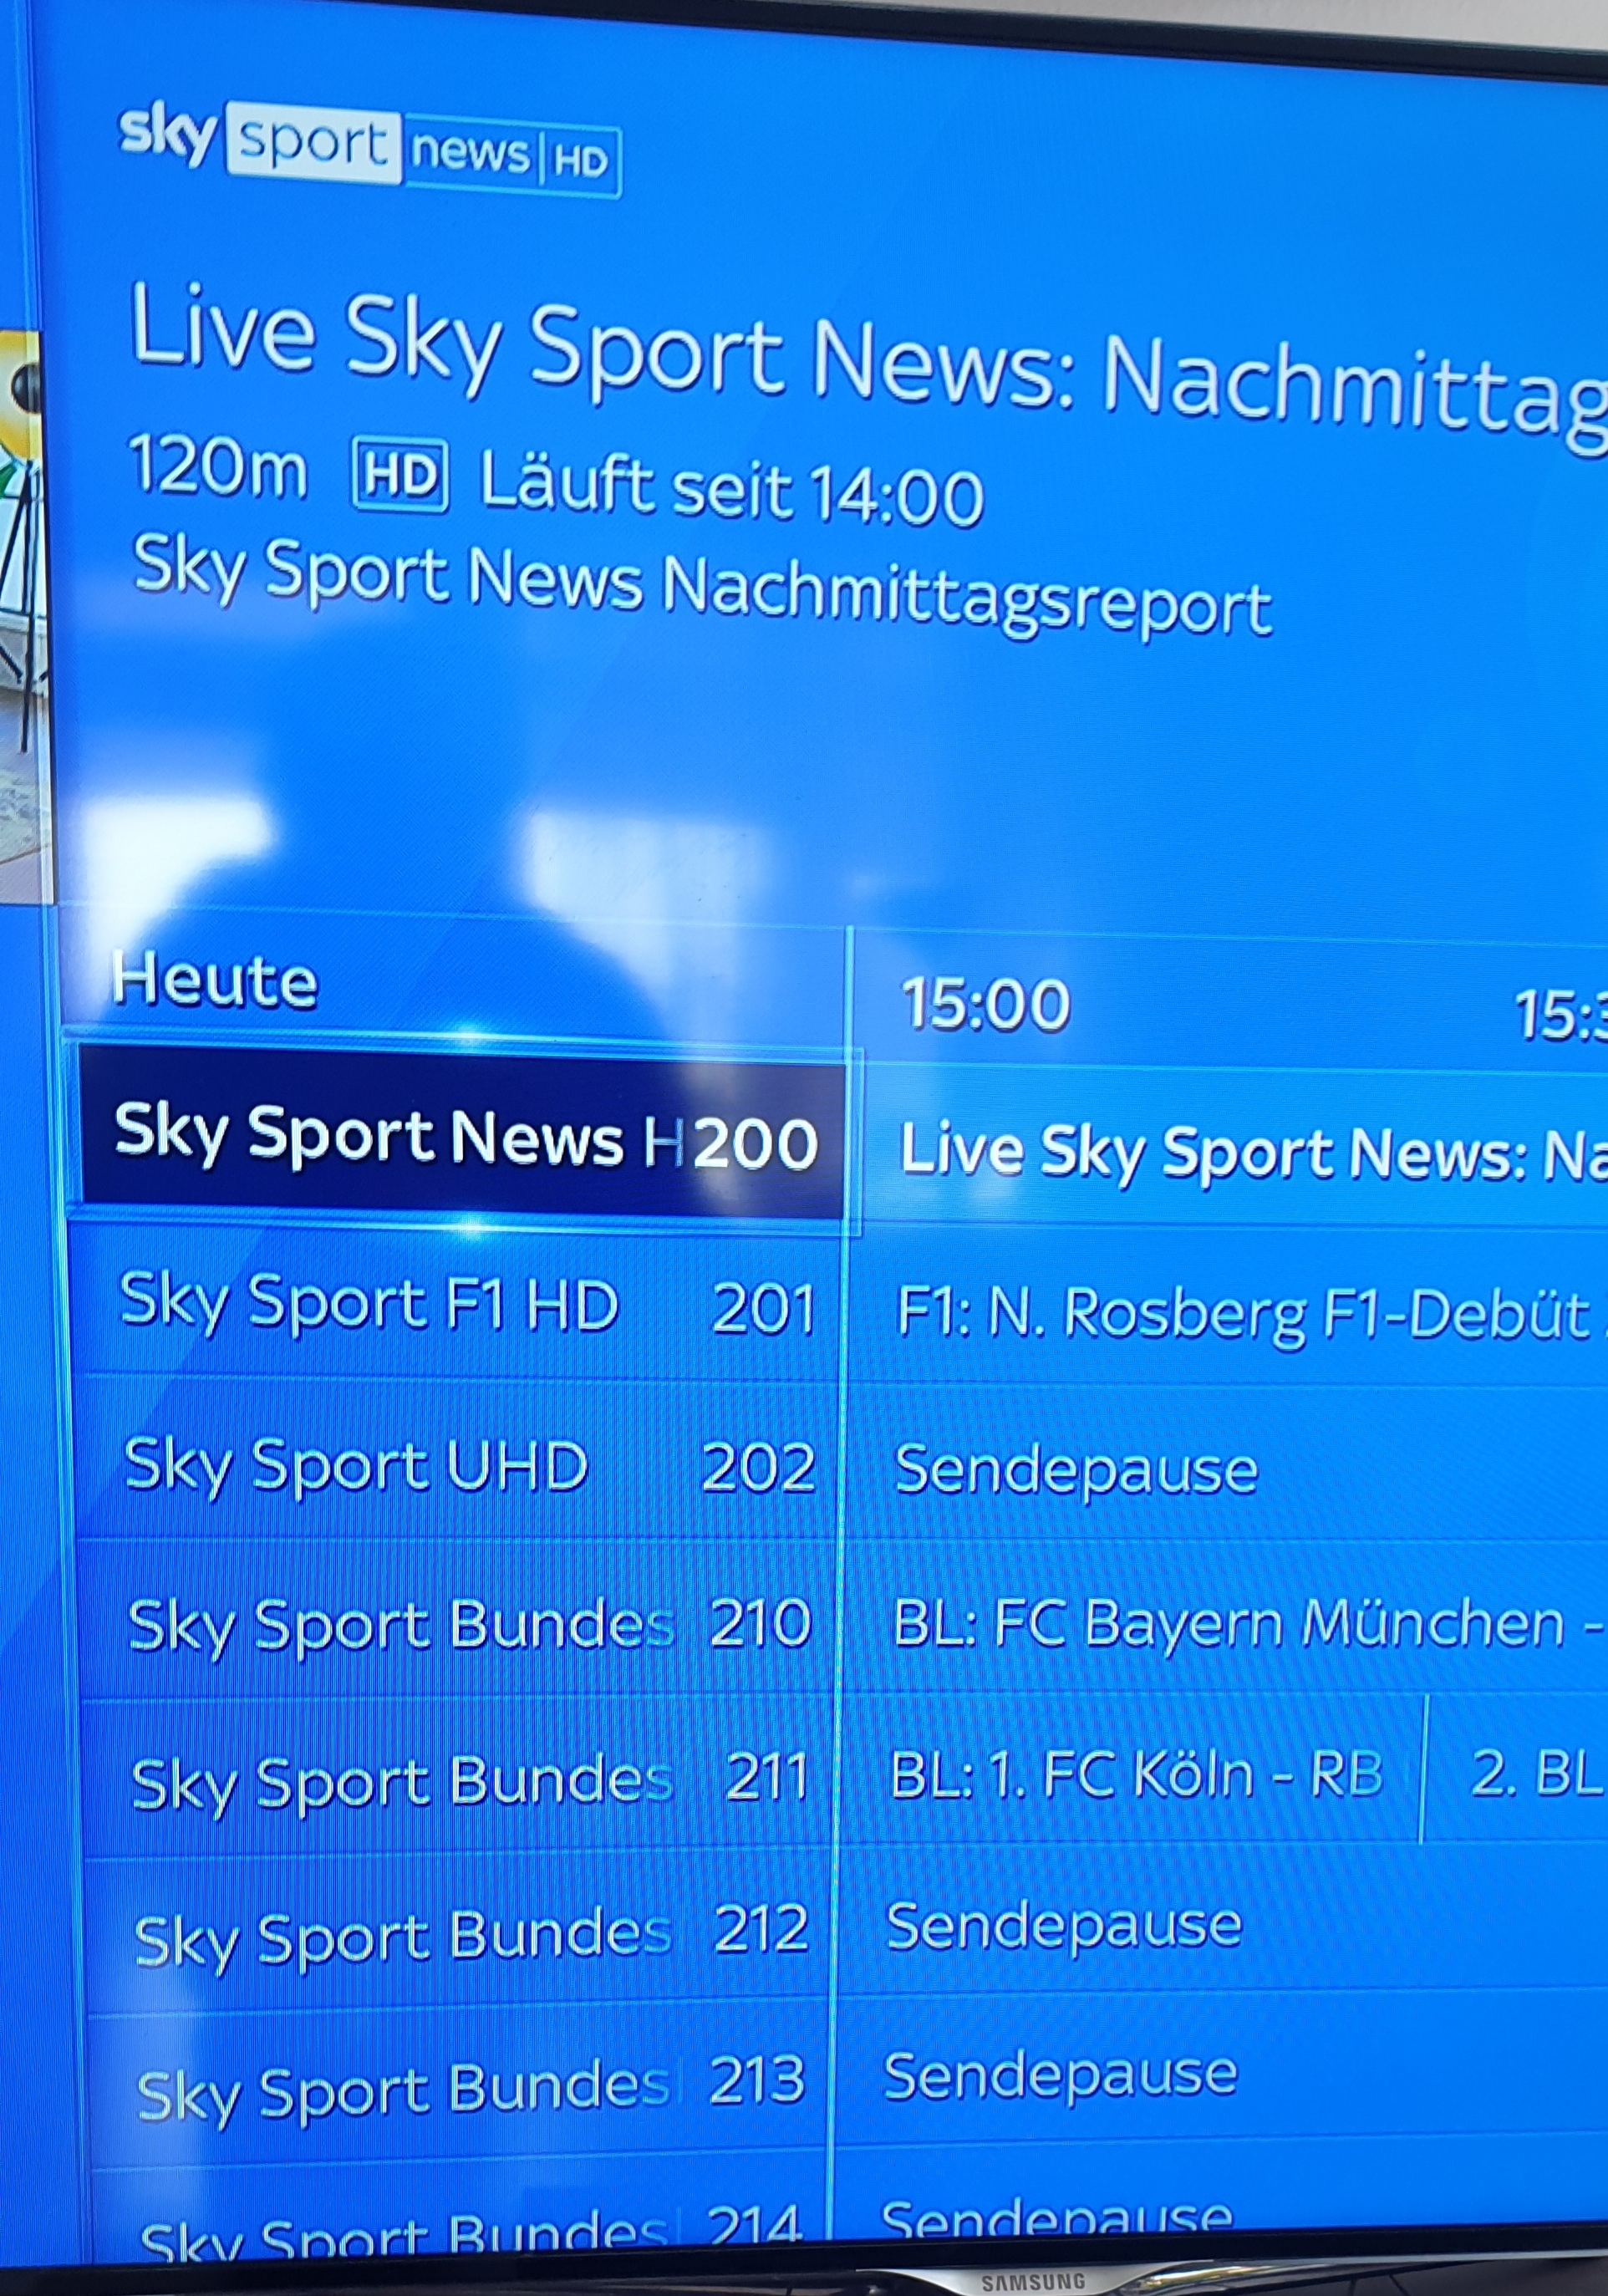 Sky Sport HD 5 taucht nicht in Senderliste auf - Sky Community